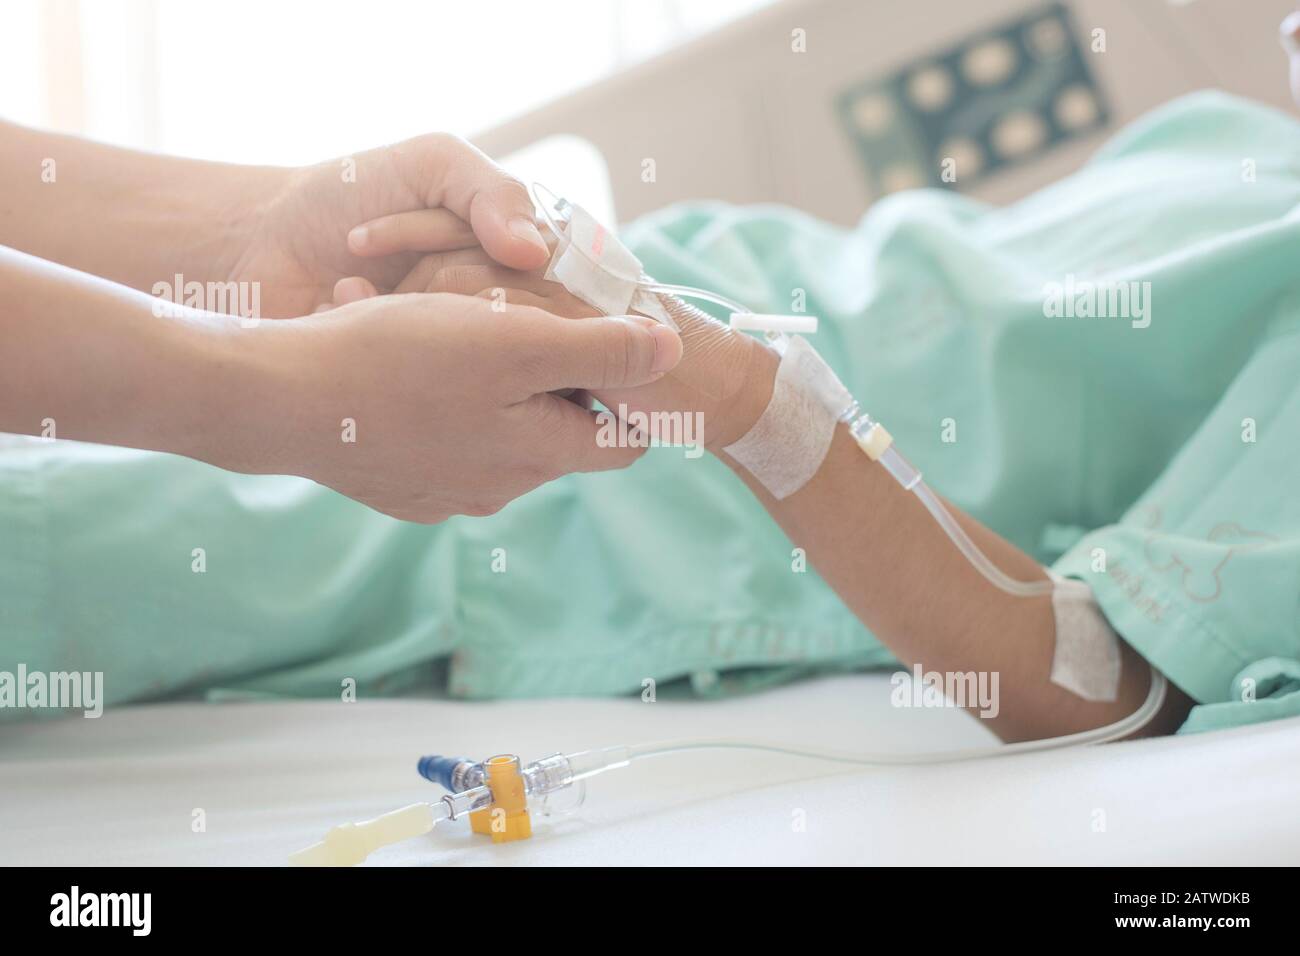 Medizinische Versorgung. Nahaufnahme der Hände der Mutter und des kranken kleinen Mädchens, das sich auf dem Sickbett im Krankenhaus zusammenhält, um Ermutigung zu geben. Stockfoto